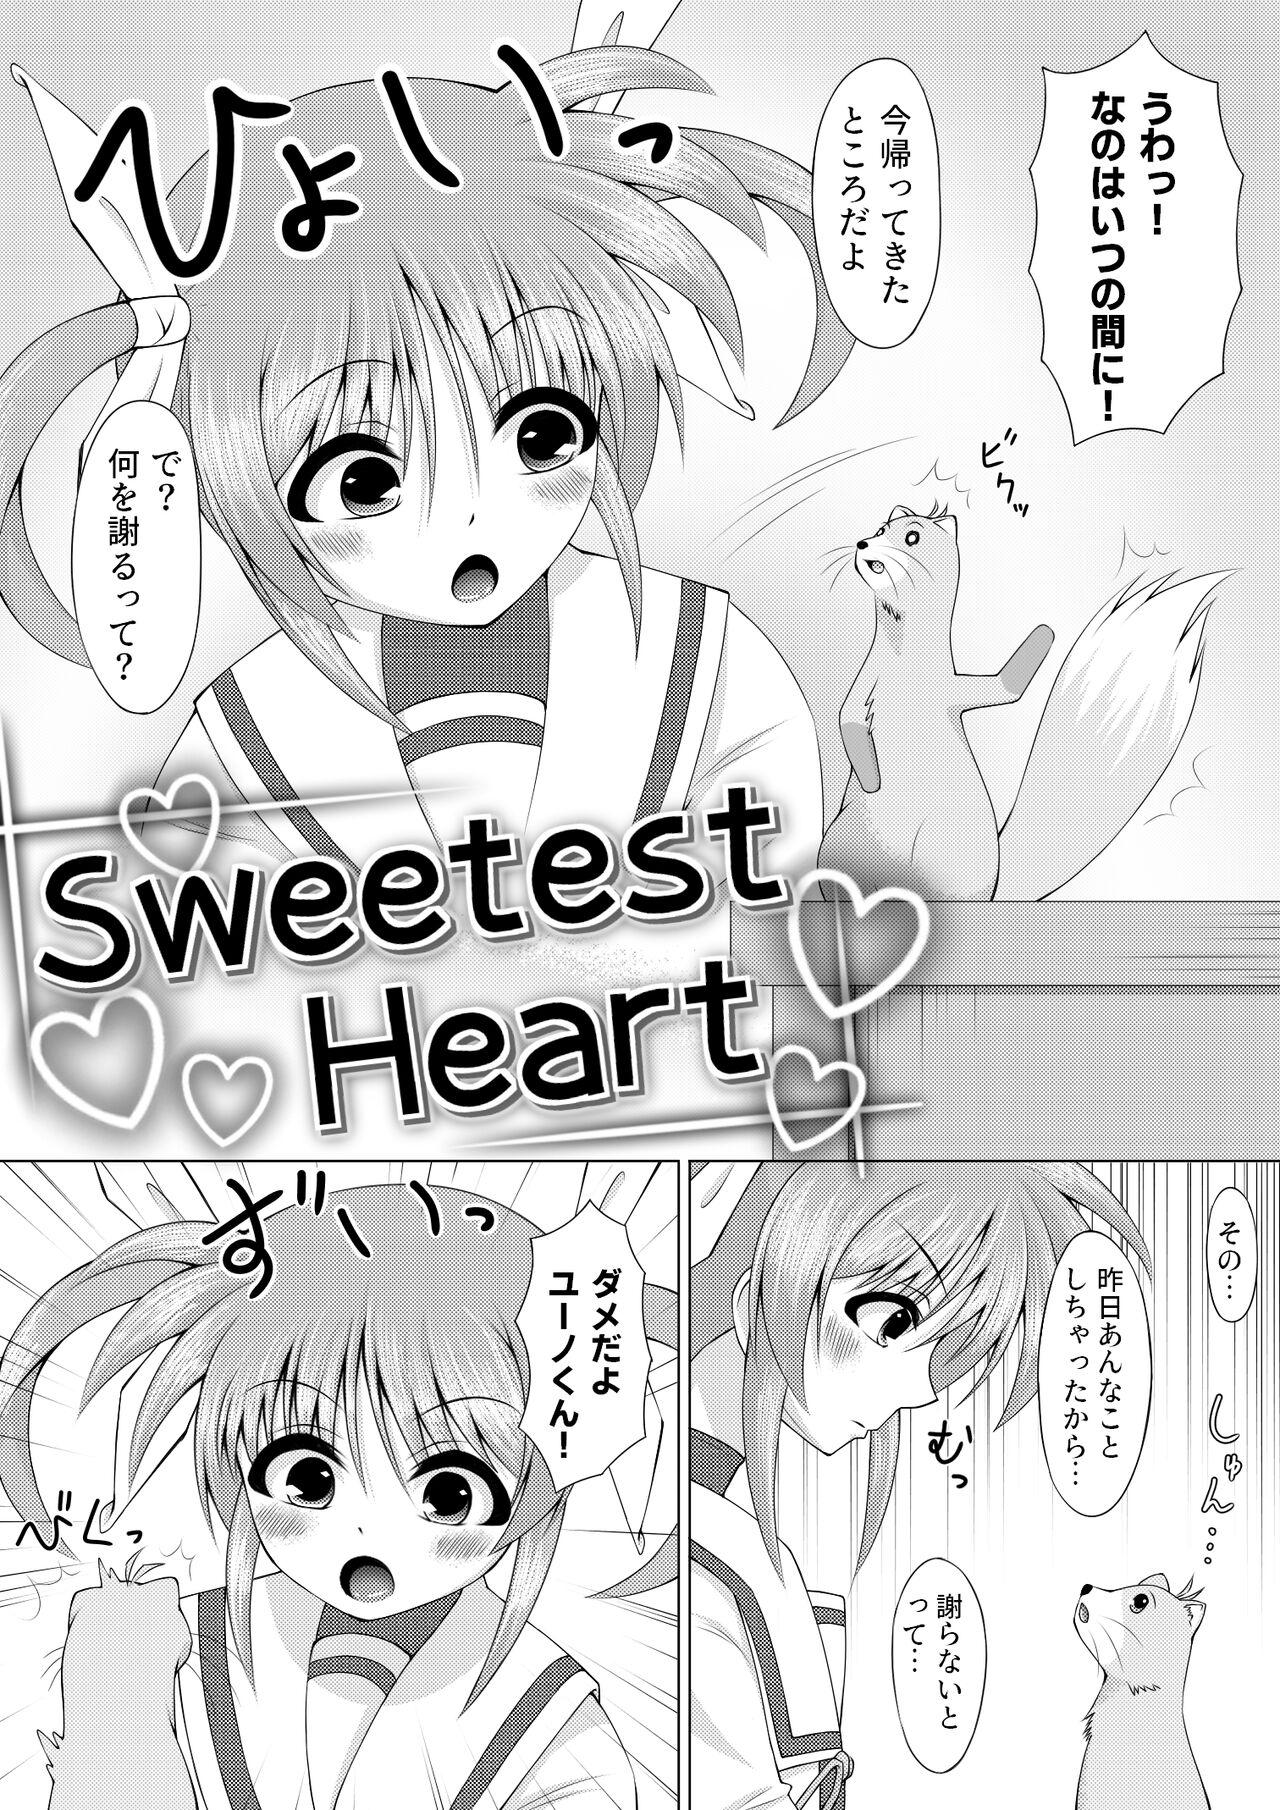 Sweetest Heart 4